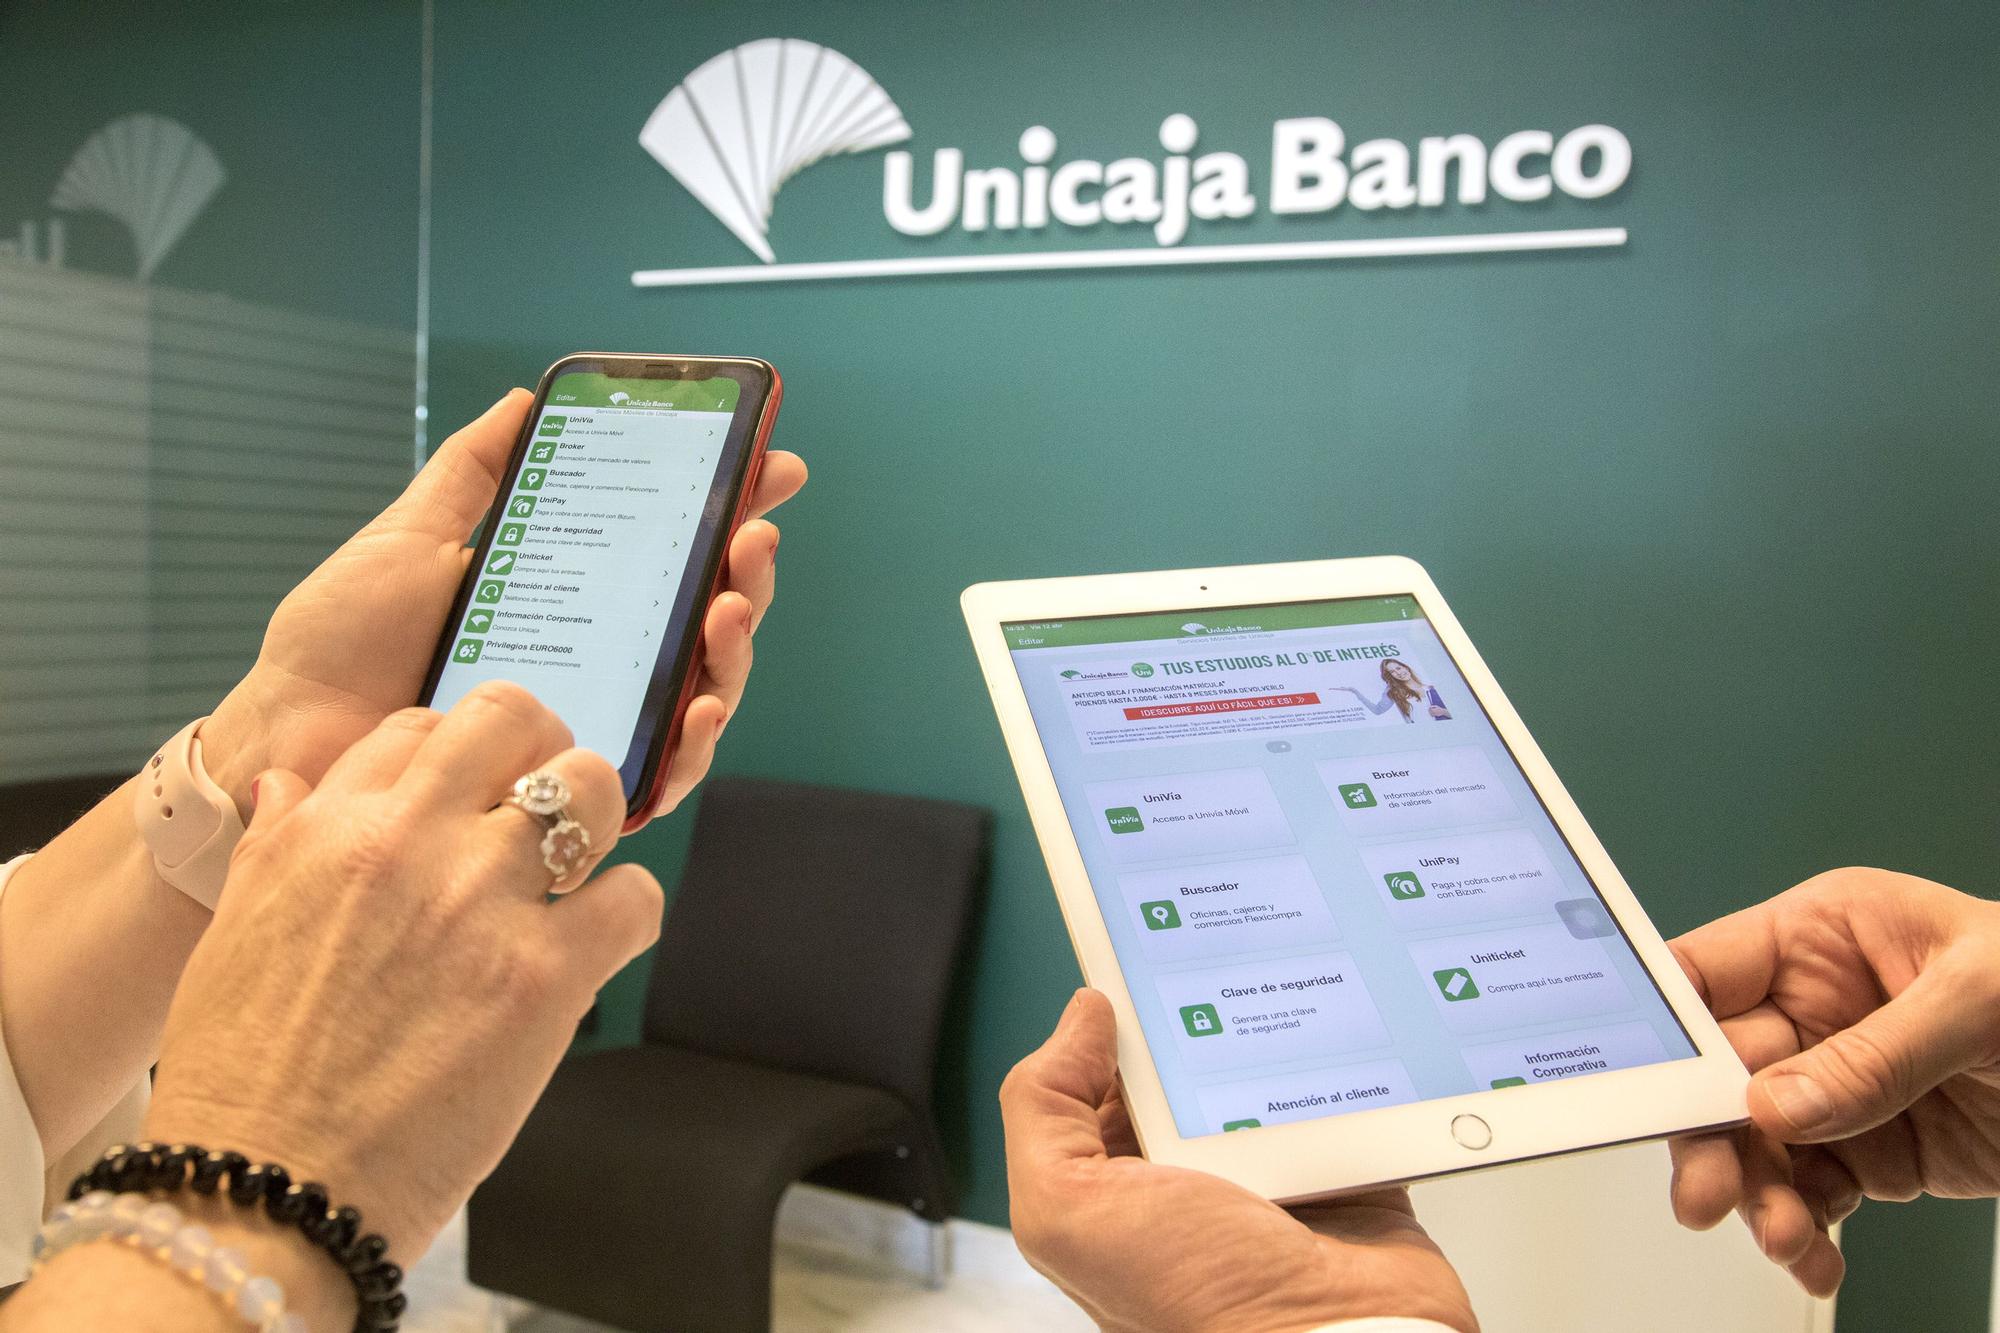 Servicios App Unicaja Banco